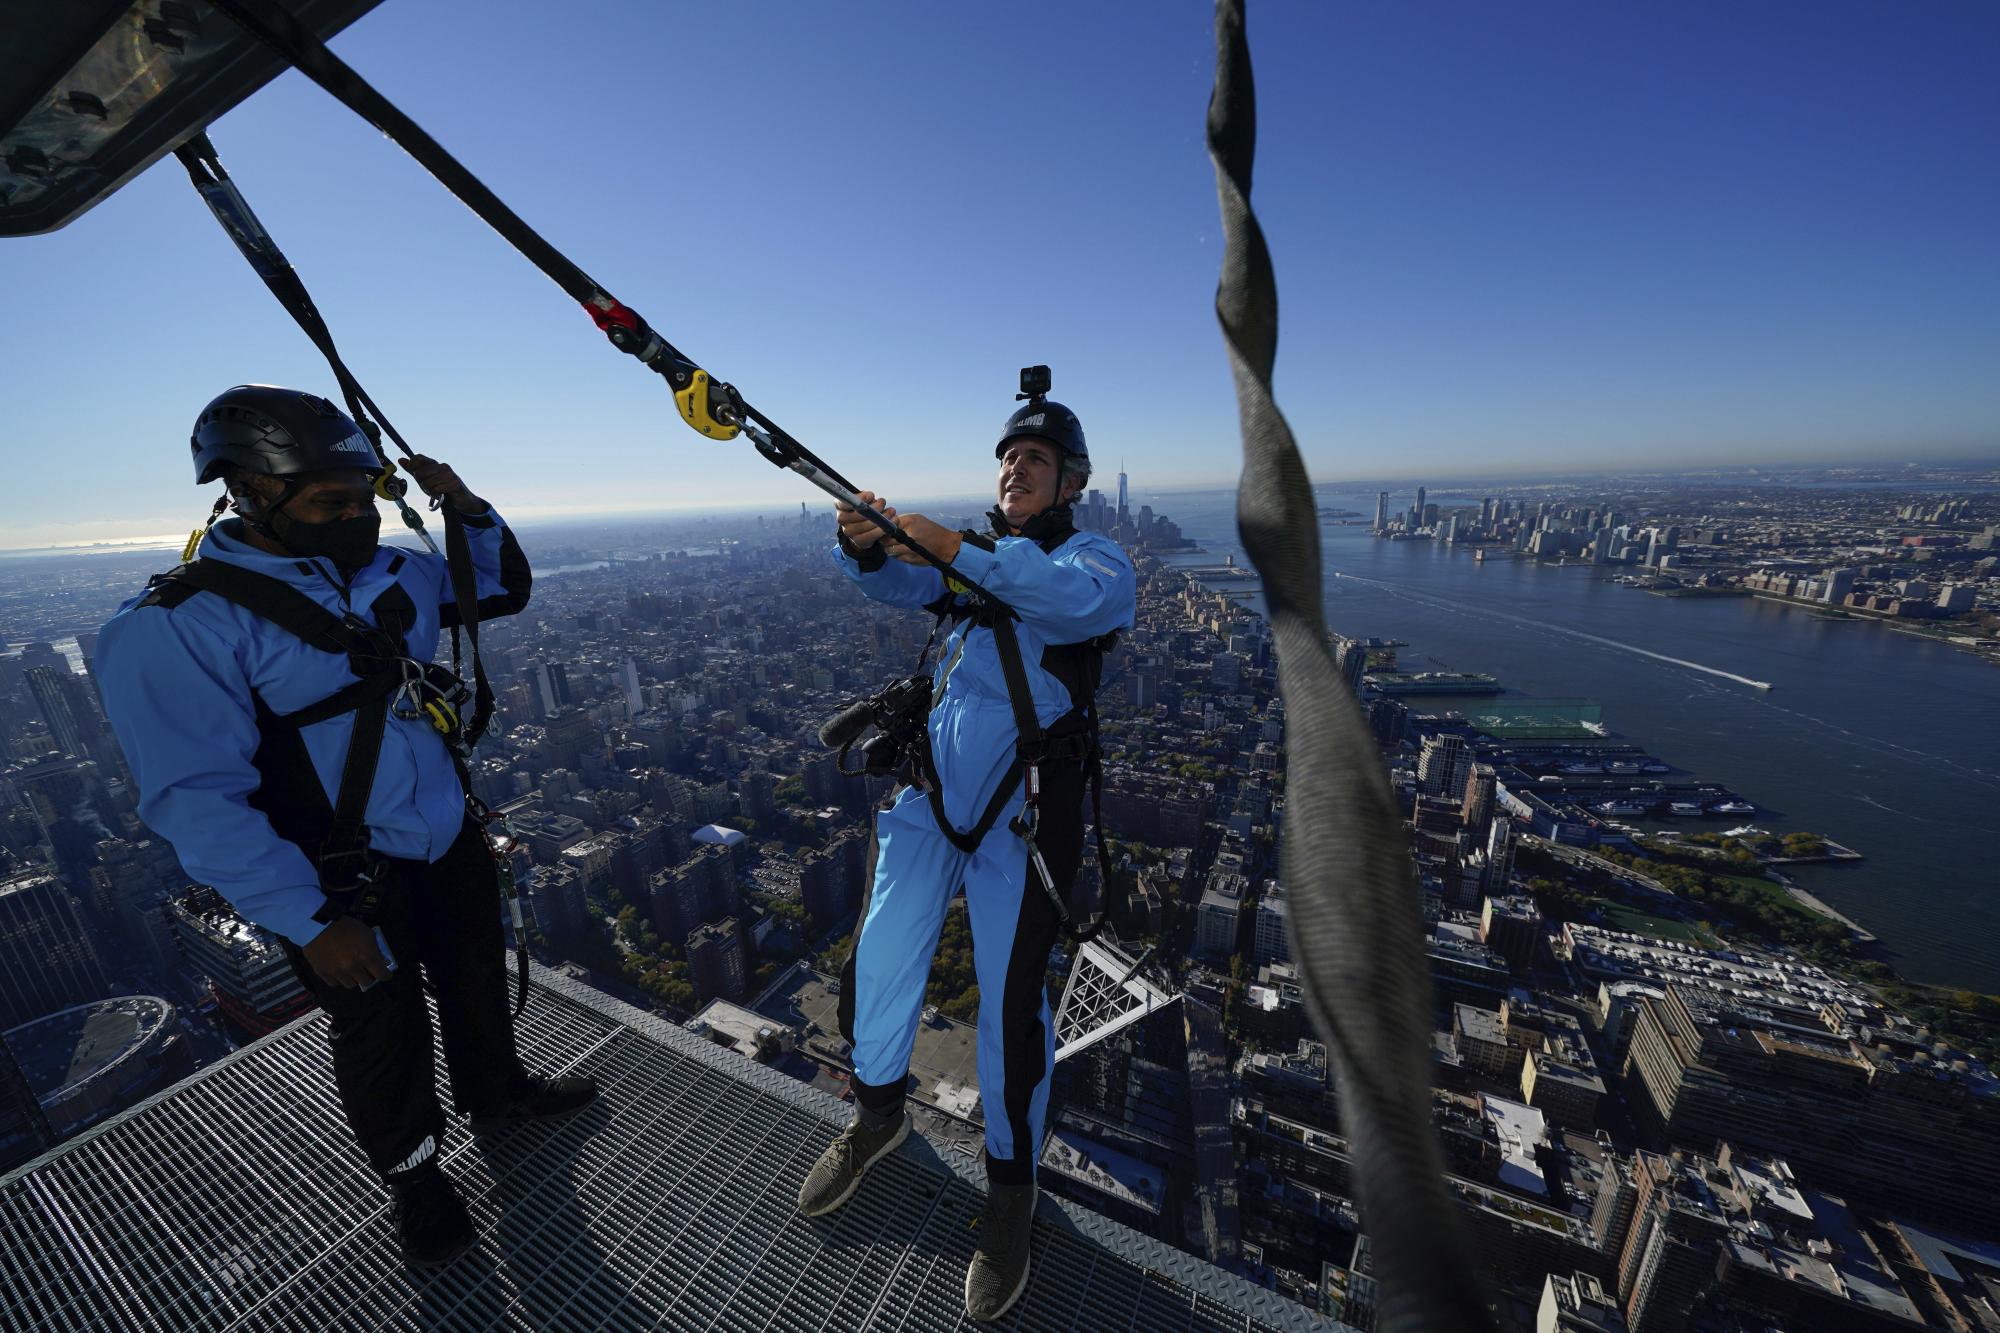 El videoperiodista David Martin, a la derecha, se inclina hacia atrás sobre el borde de City Climb, una nueva atracción en 30 Hudson Yards en Nueva York, el miércoles 3 de noviembre de 2021. (Foto AP / Seth Wenig)